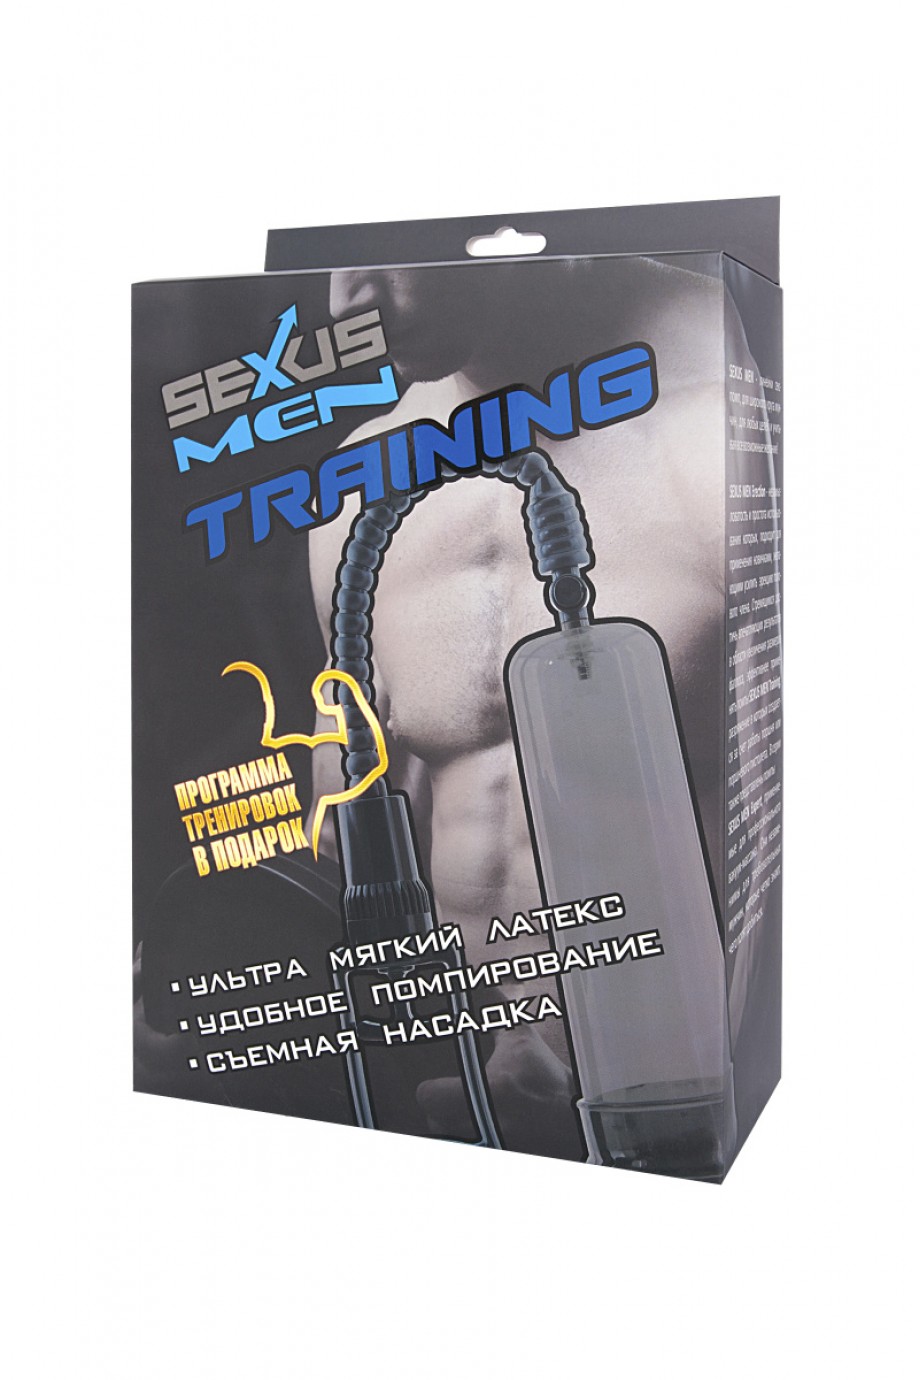 Sexus Men Training, вакуумная, механическая, ABS пластик, чёрный, 22 см